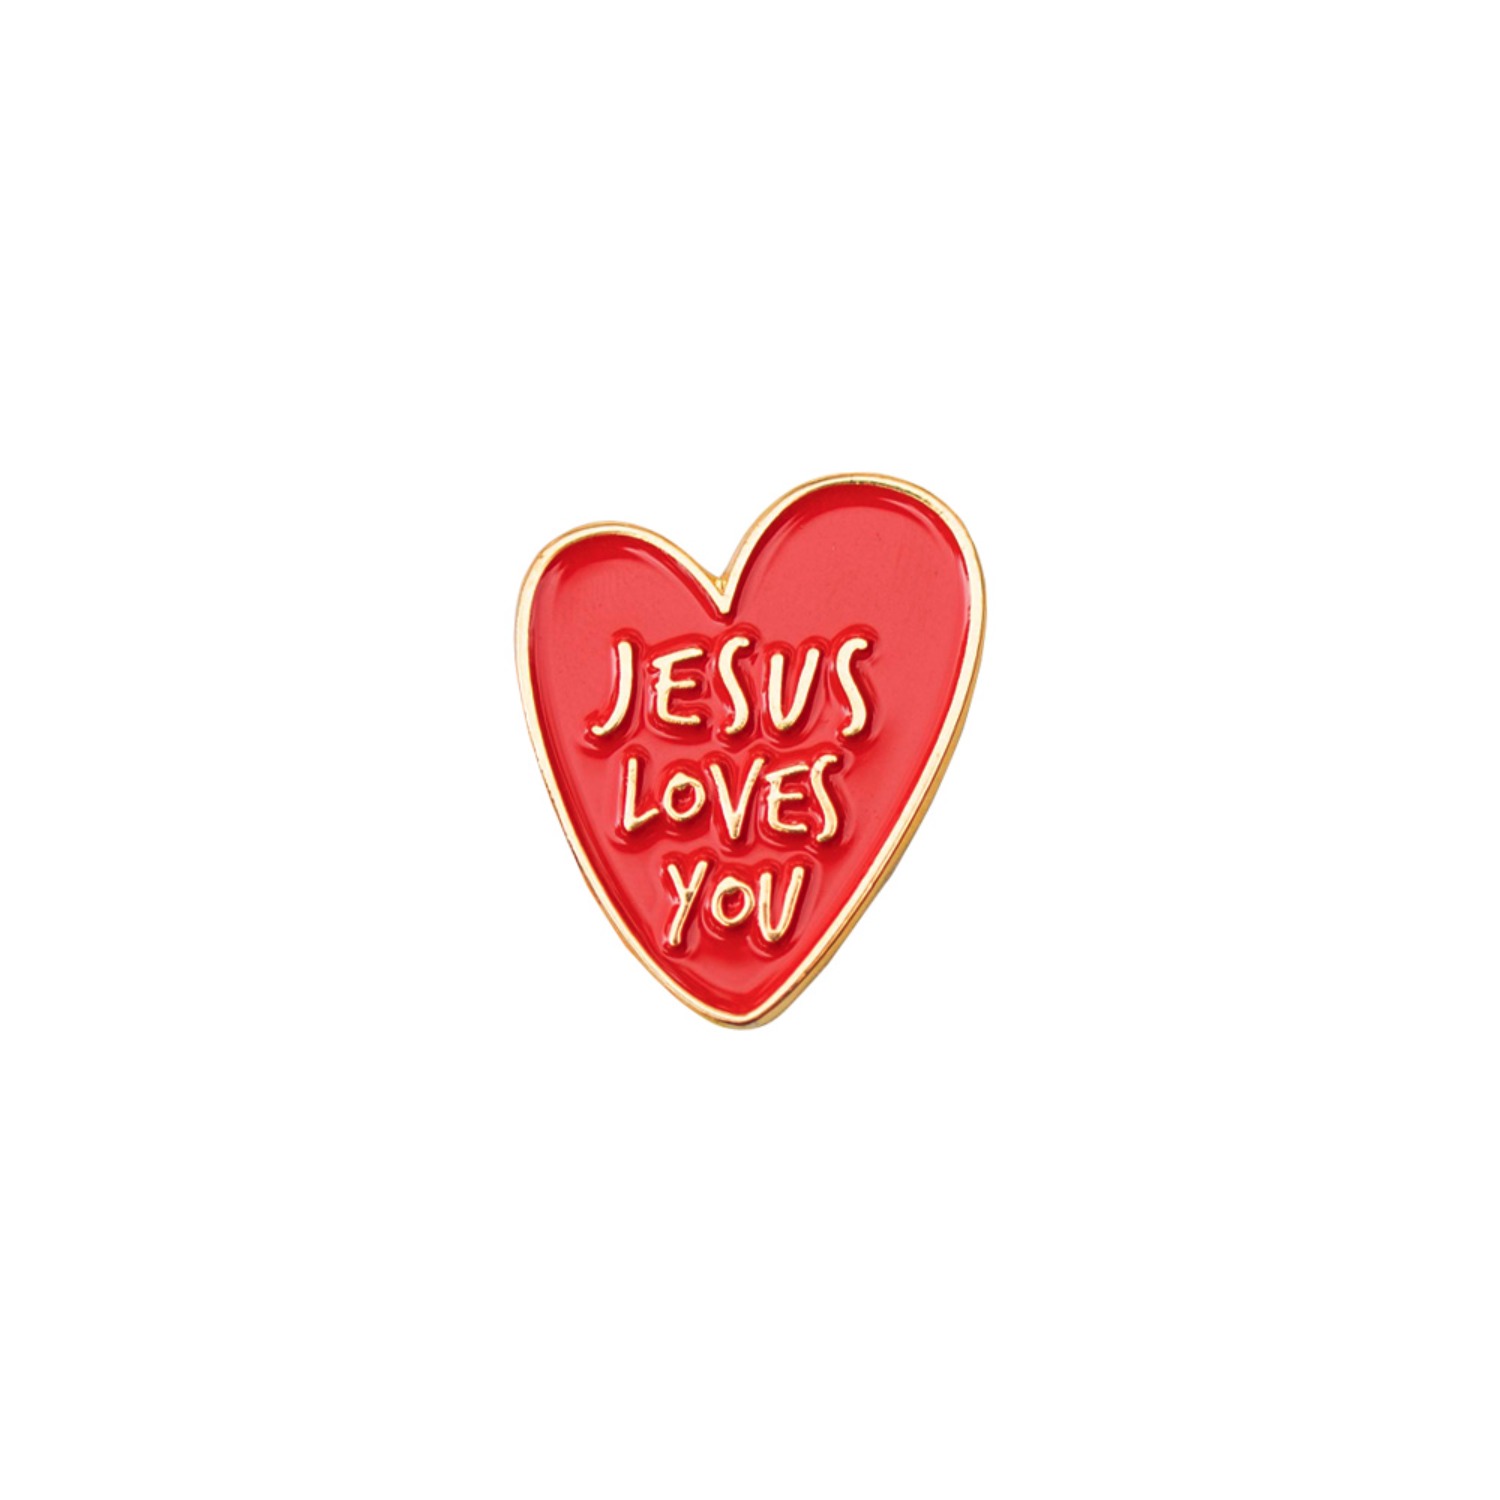 JESUS LOVES YOU 하트뱃지